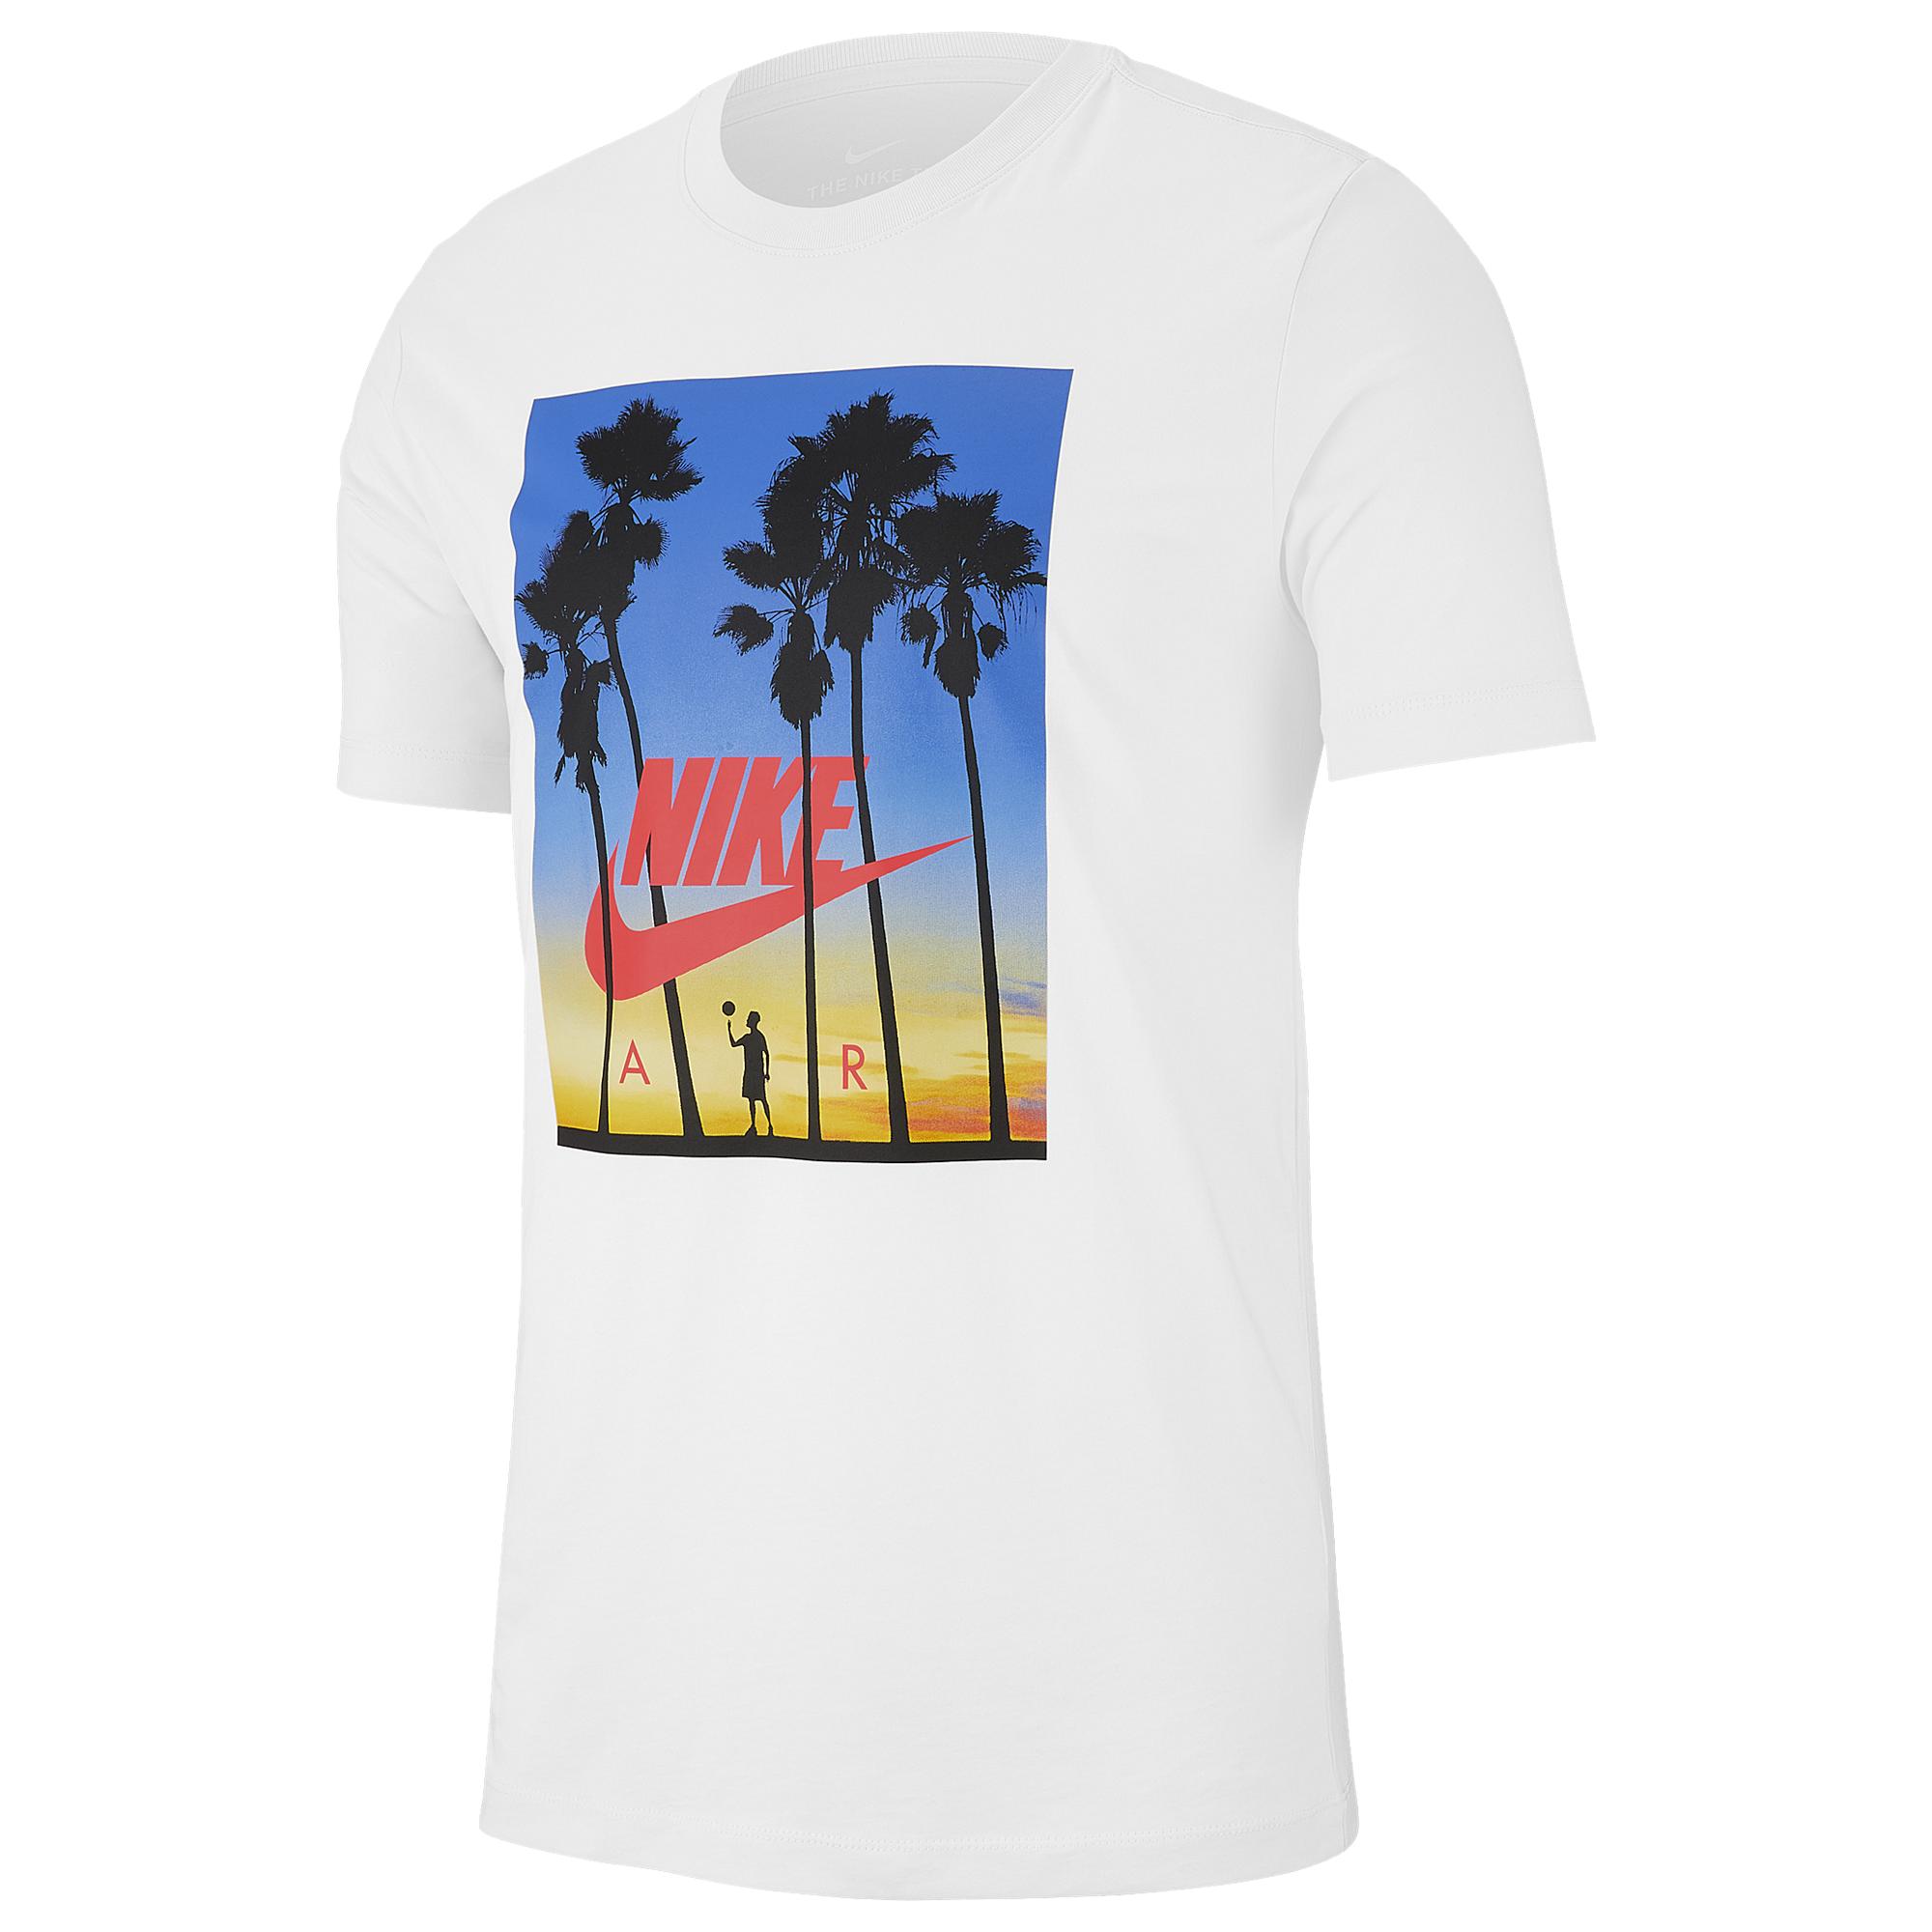 Nike Cotton Tropical Air T-shirt in 